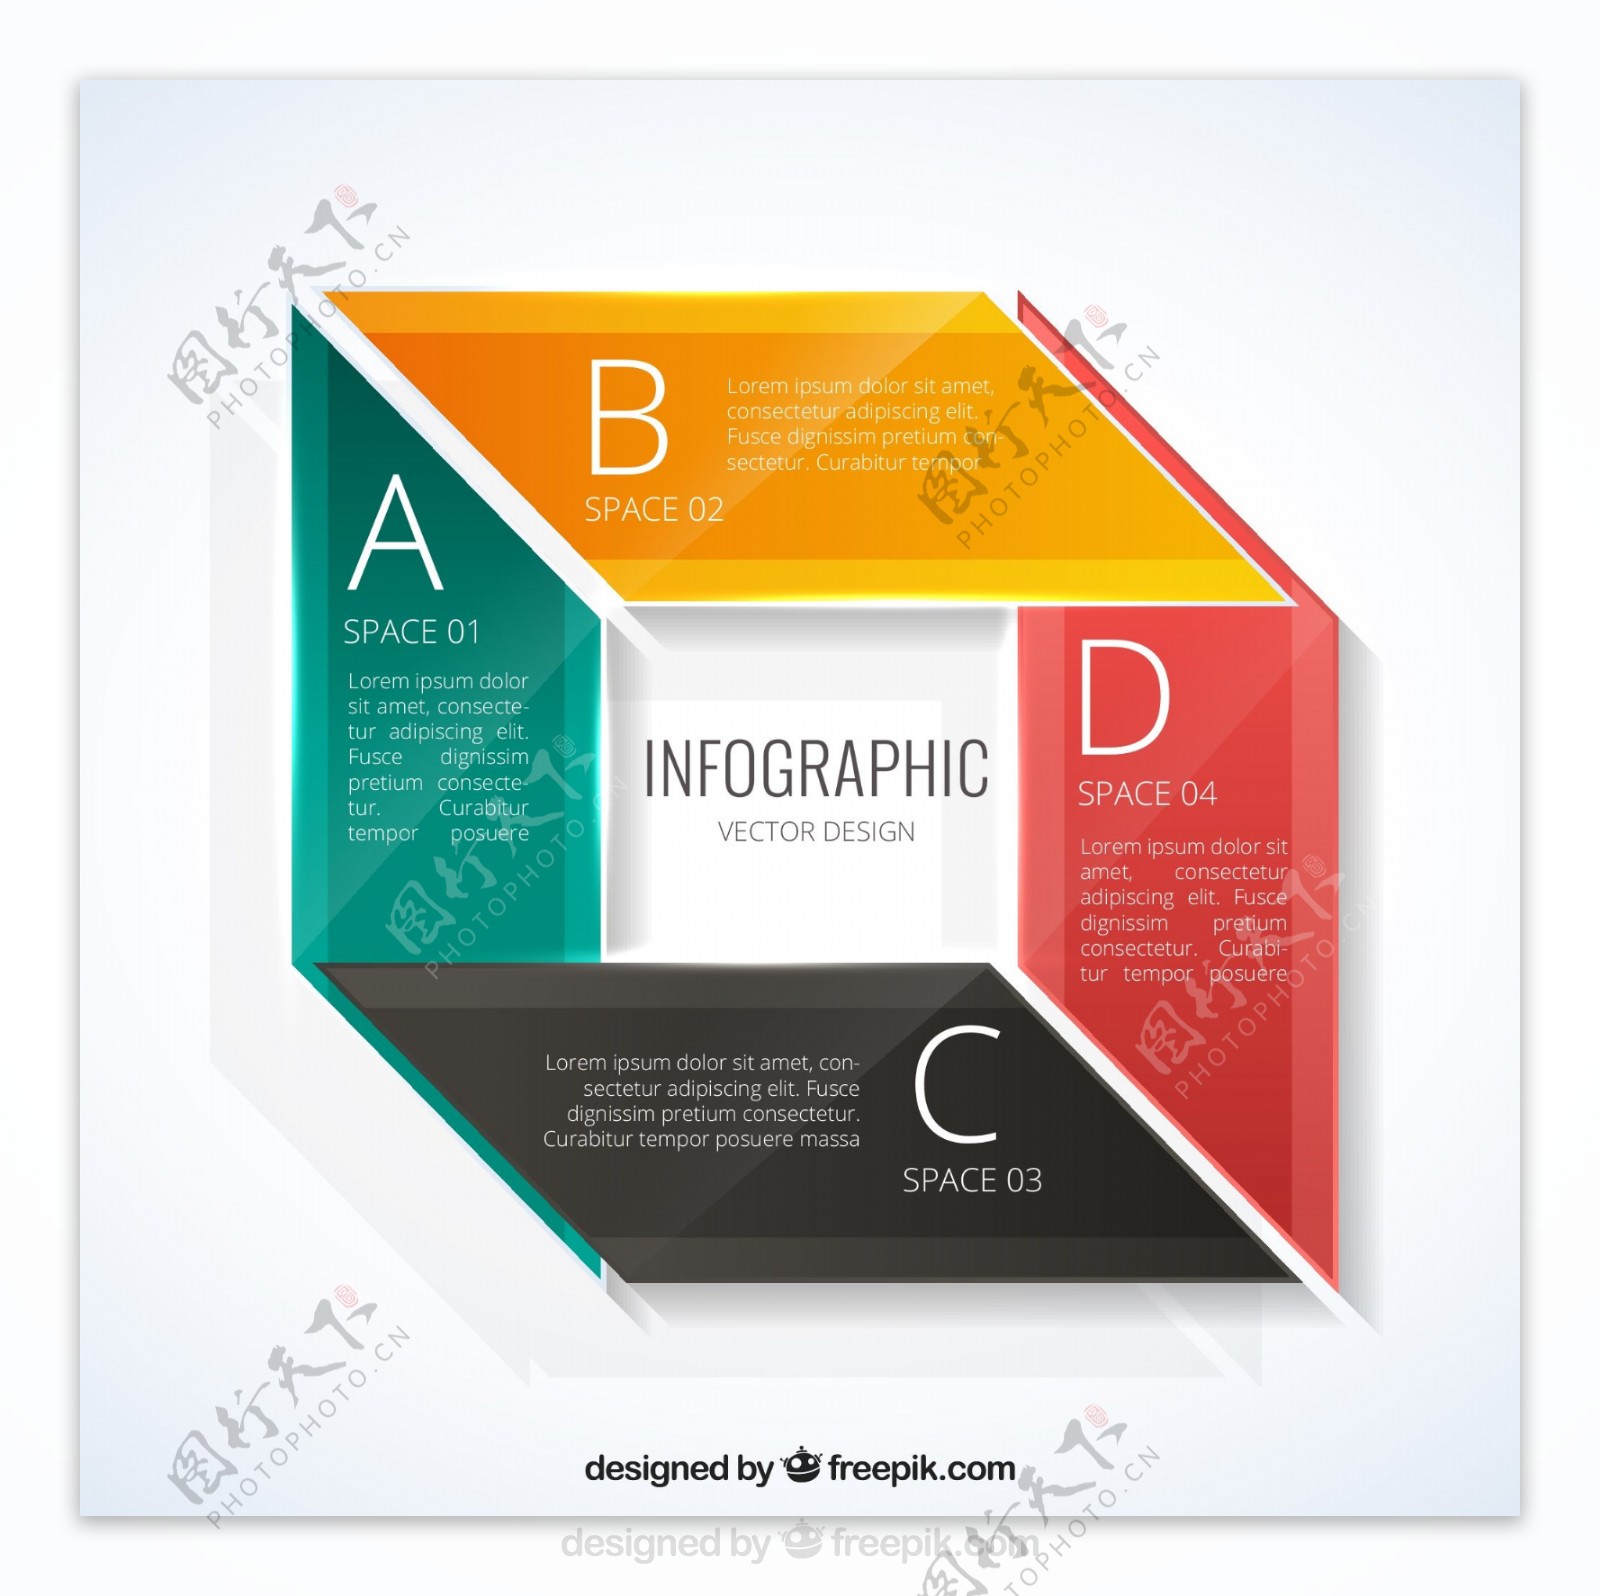 彩色方形商务信息图矢量素材